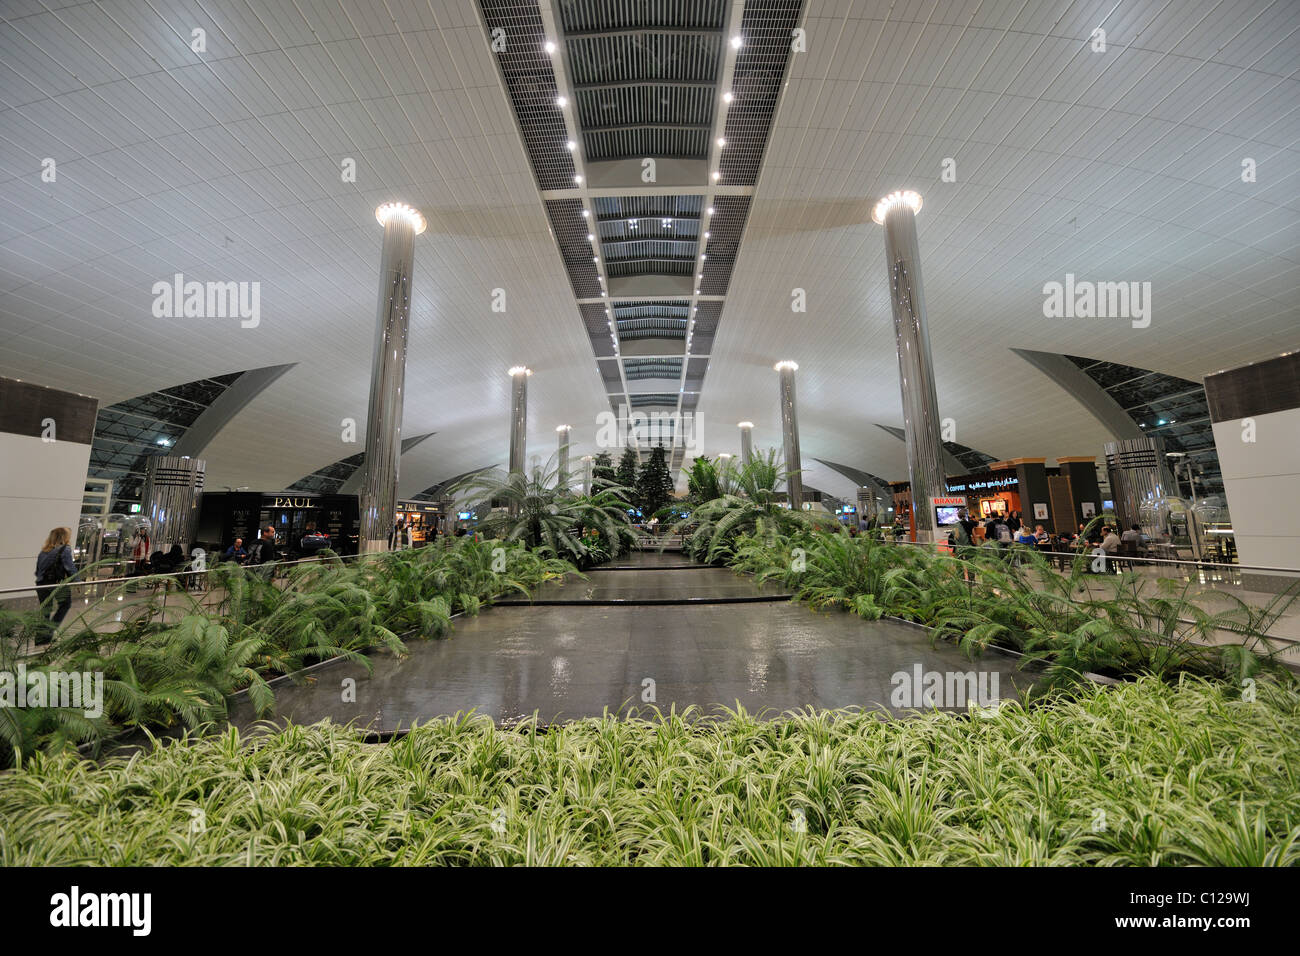 Aeropuerto Internacional, el emirato de Dubai, Emiratos Árabes Unidos, Arabia, Oriente Medio Foto de stock